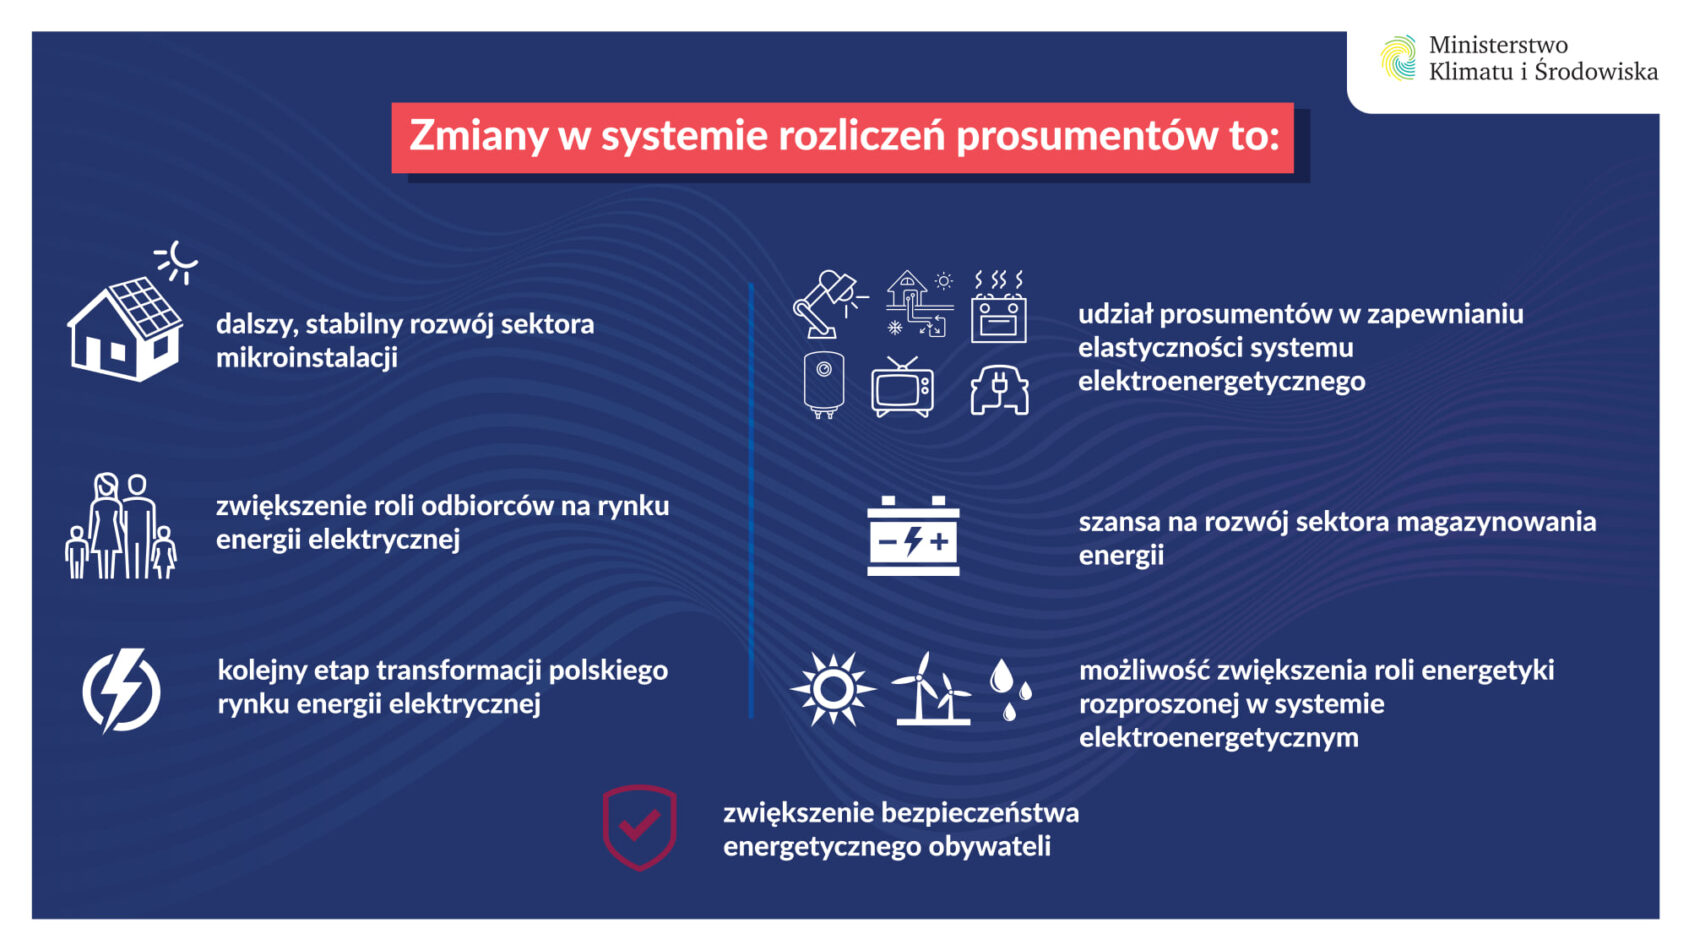 Net-Billing - zmiany w systemie rozliczeń prosumentów to m.in. dalszy rozwój mikroinstalacji i kolejny etap transformacji sektora elektroenergetycznego w Polsce. Jakie daje korzyści prosumentom?